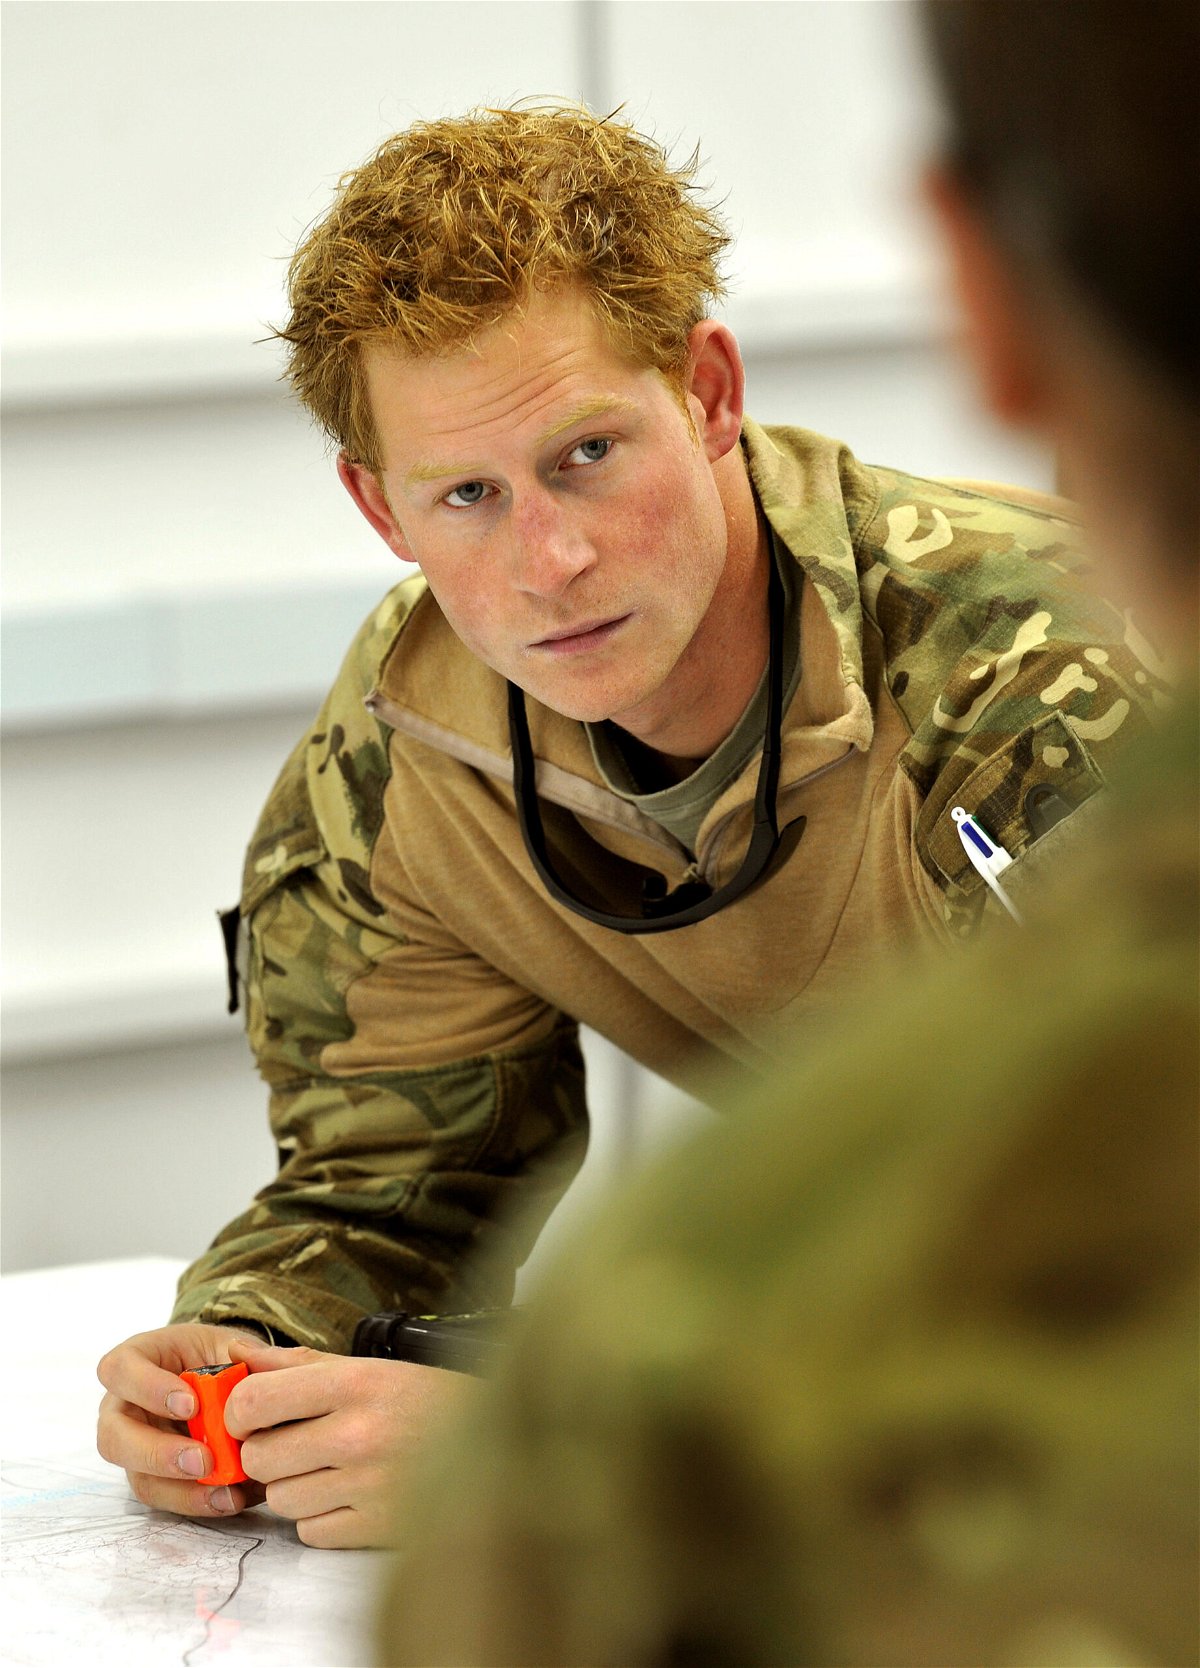 <i>John Stillwell/AFP/Getty Images</i><br/>Prince Harry